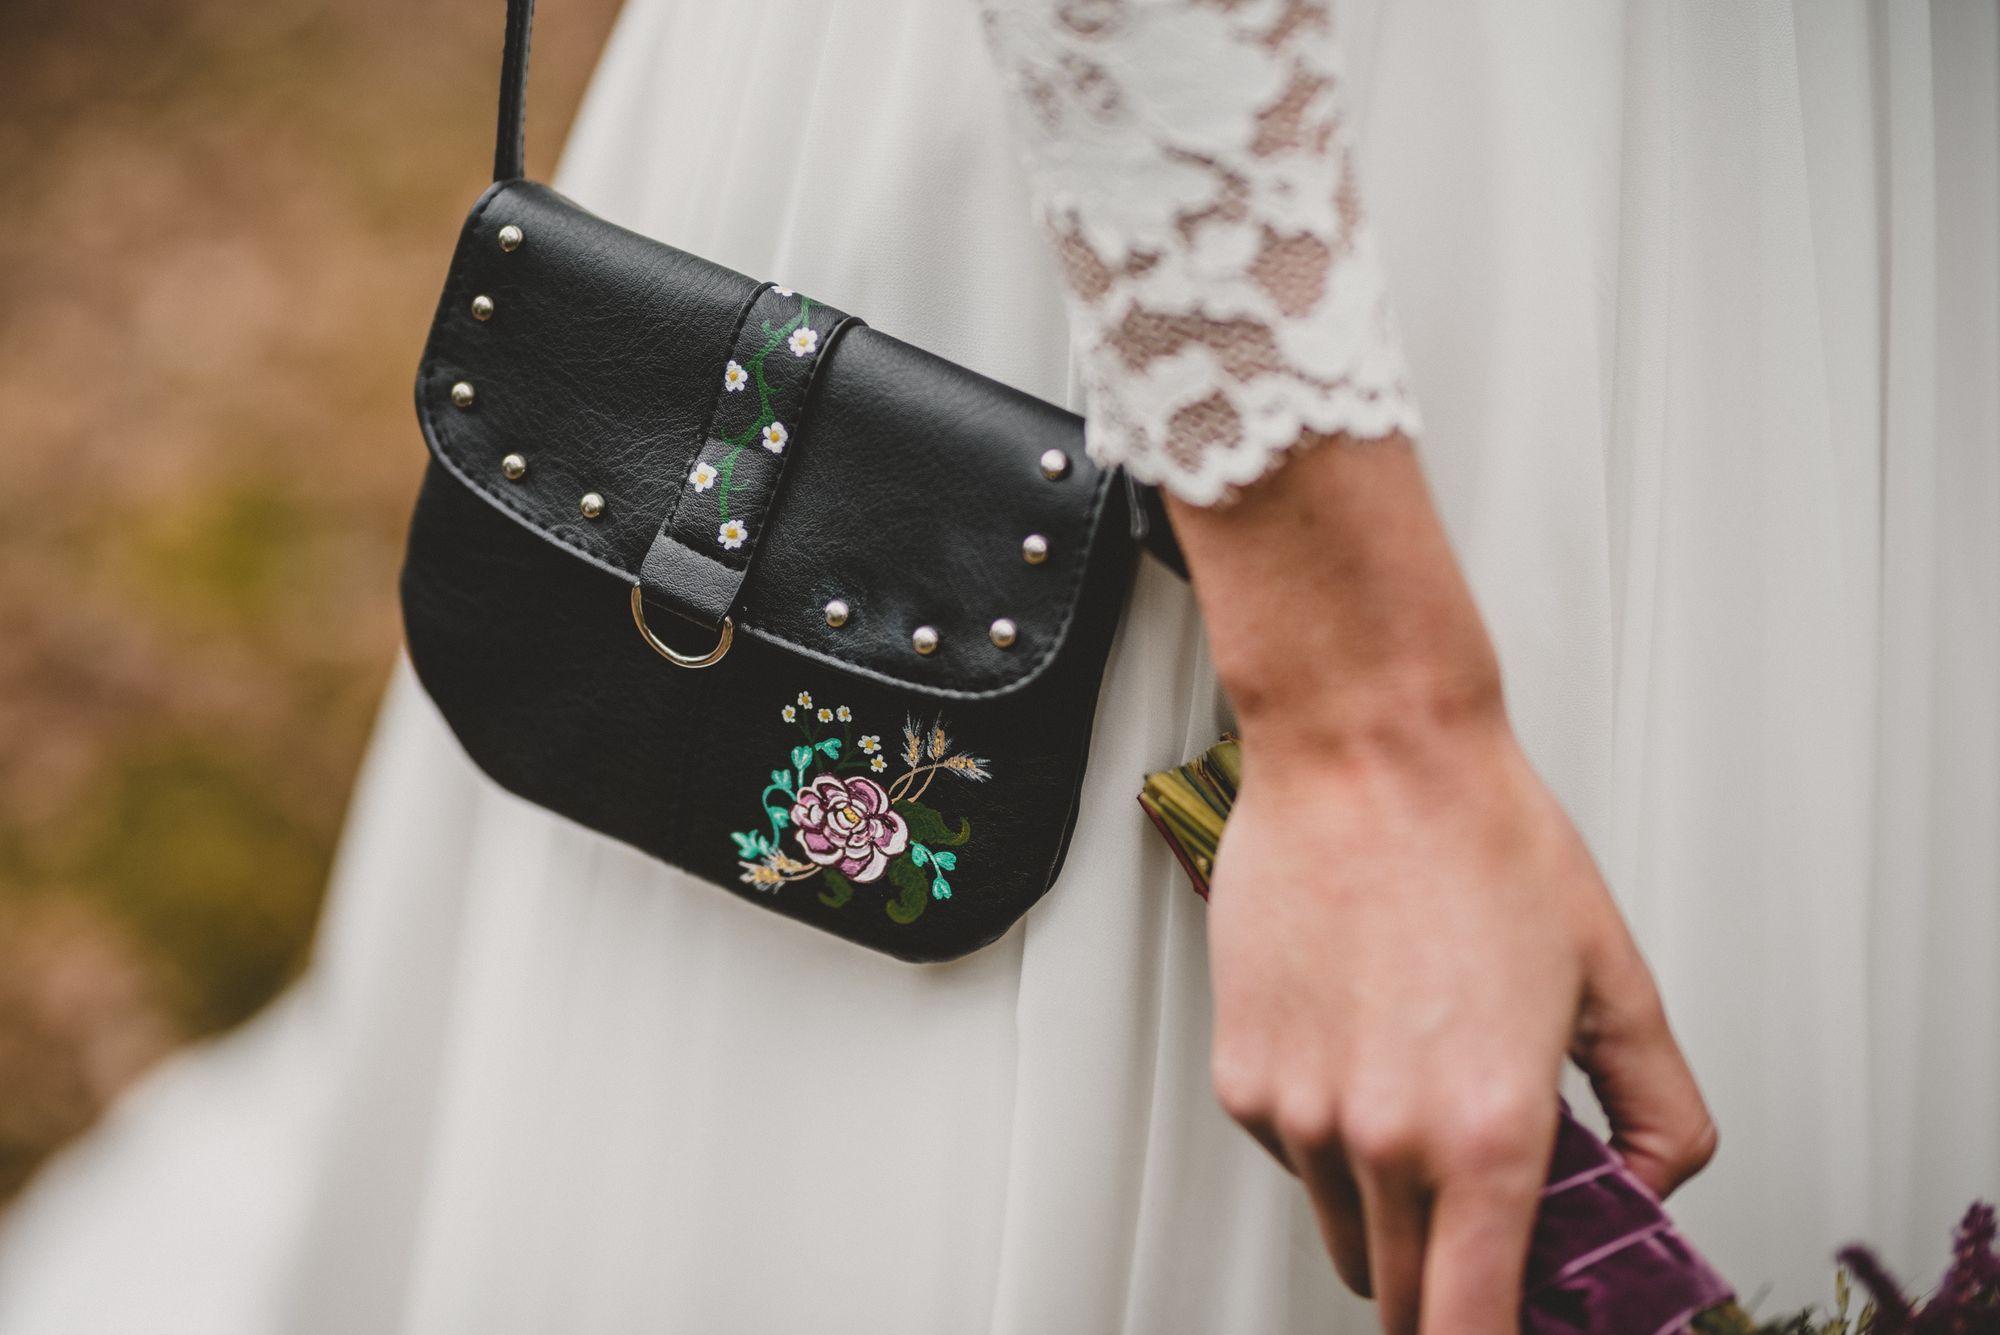 Eine Braut hält eine schwarze Handtasche mit Blumen darauf.